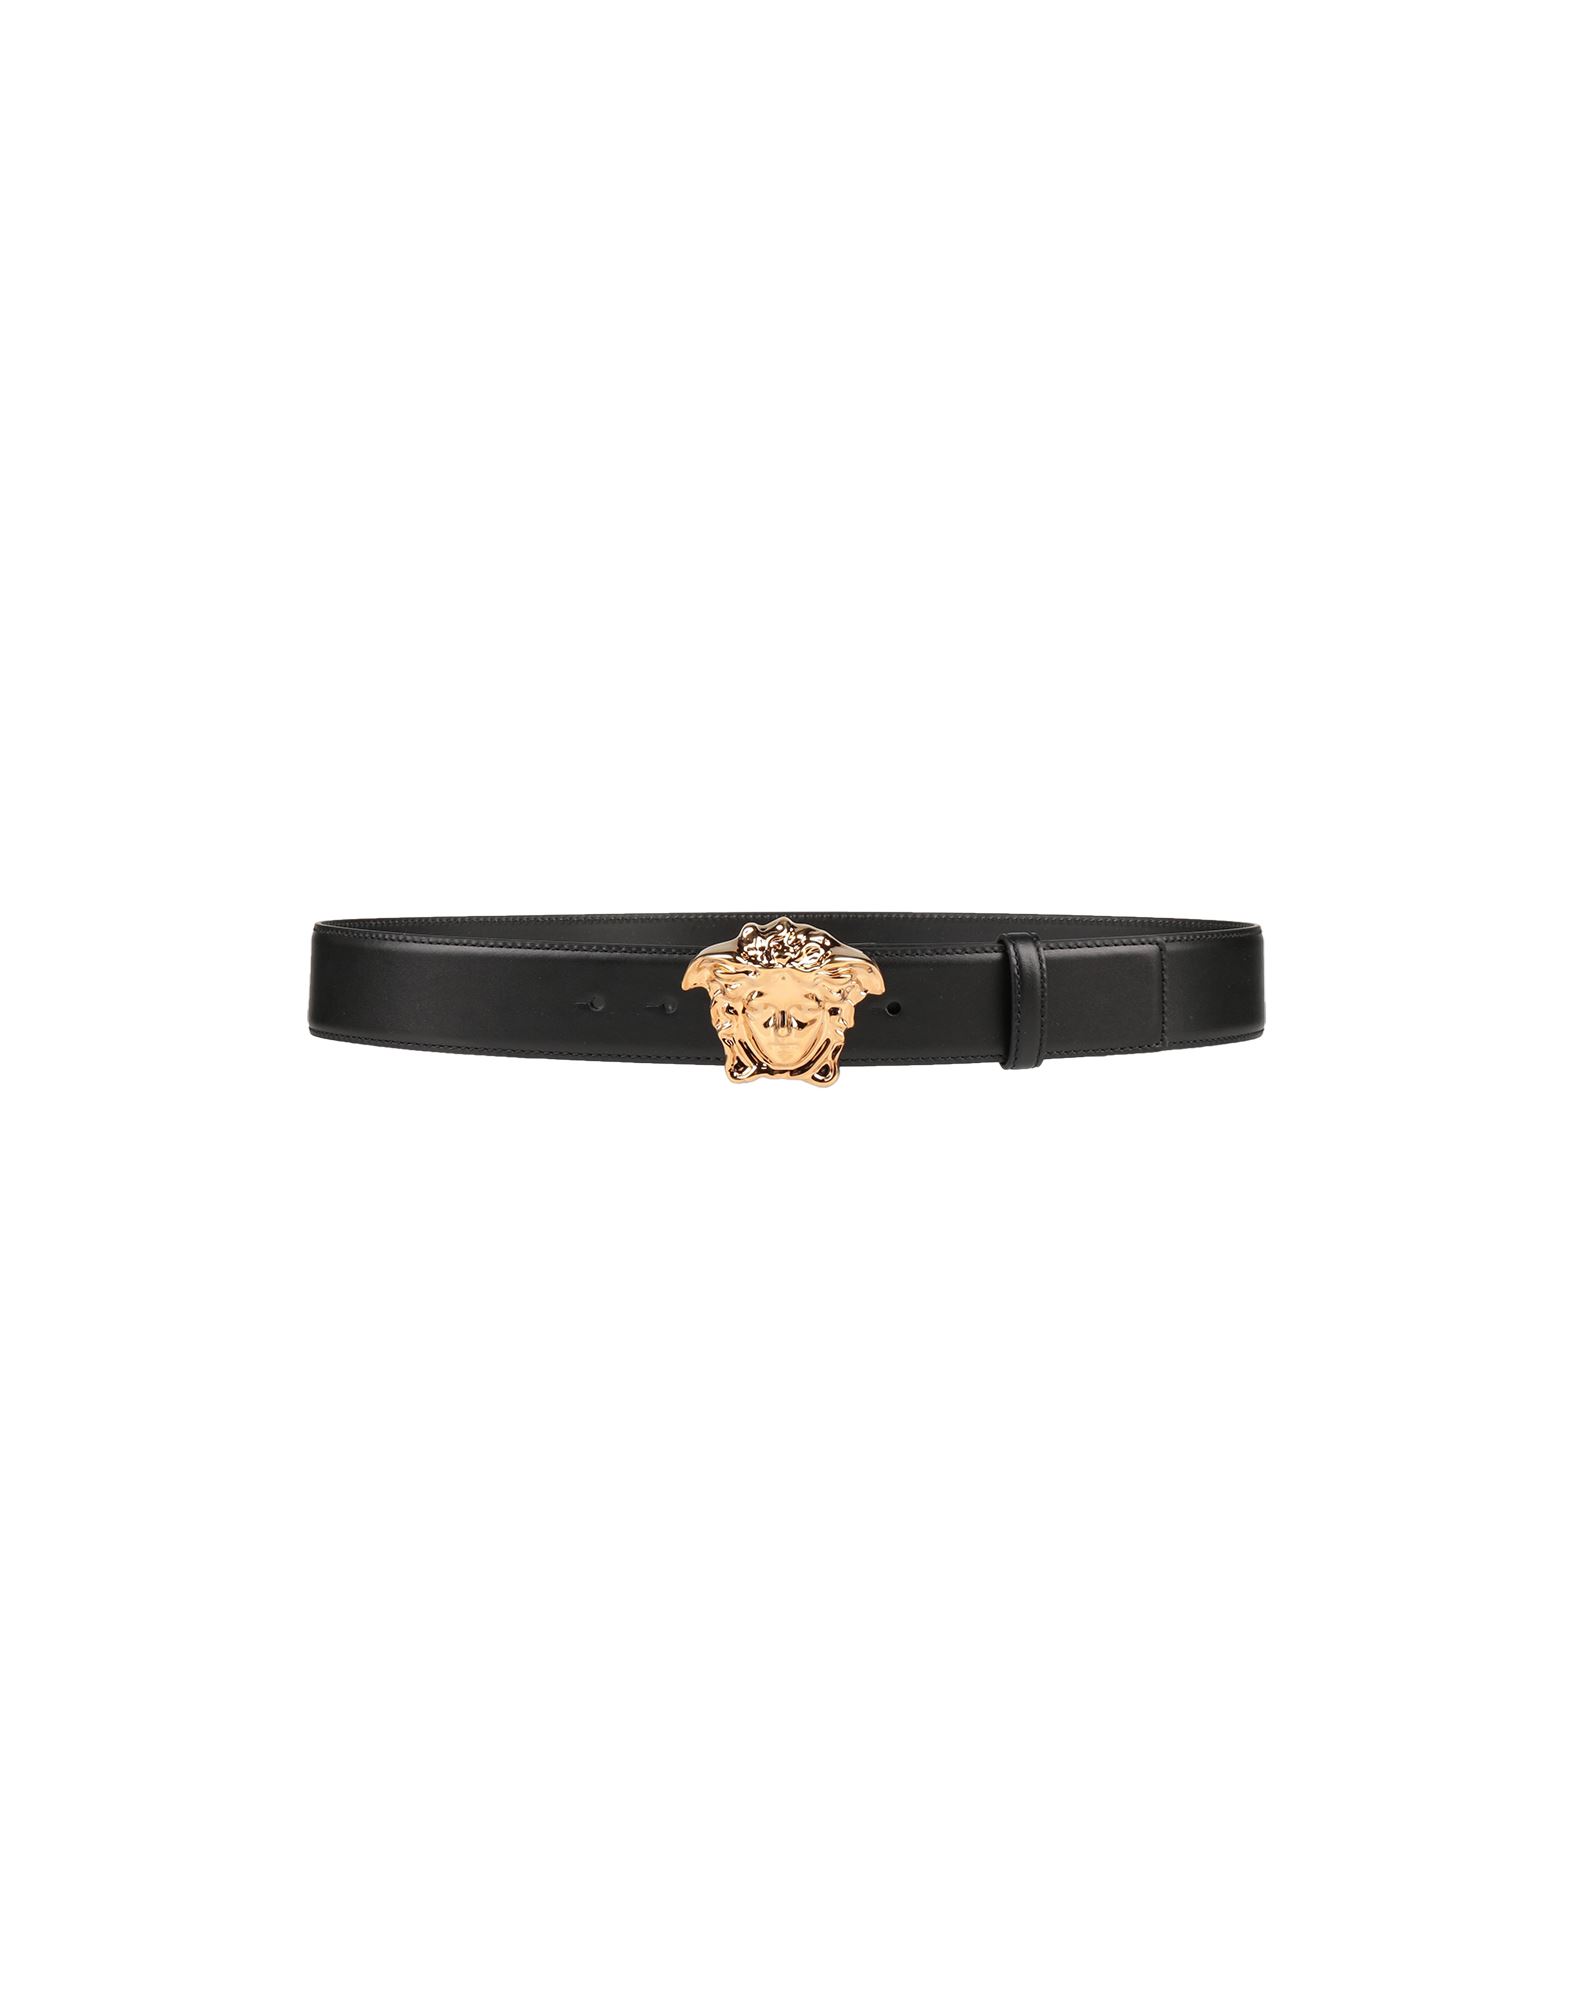 Shop Versace Man Belt Black Size 39.5 Calfskin